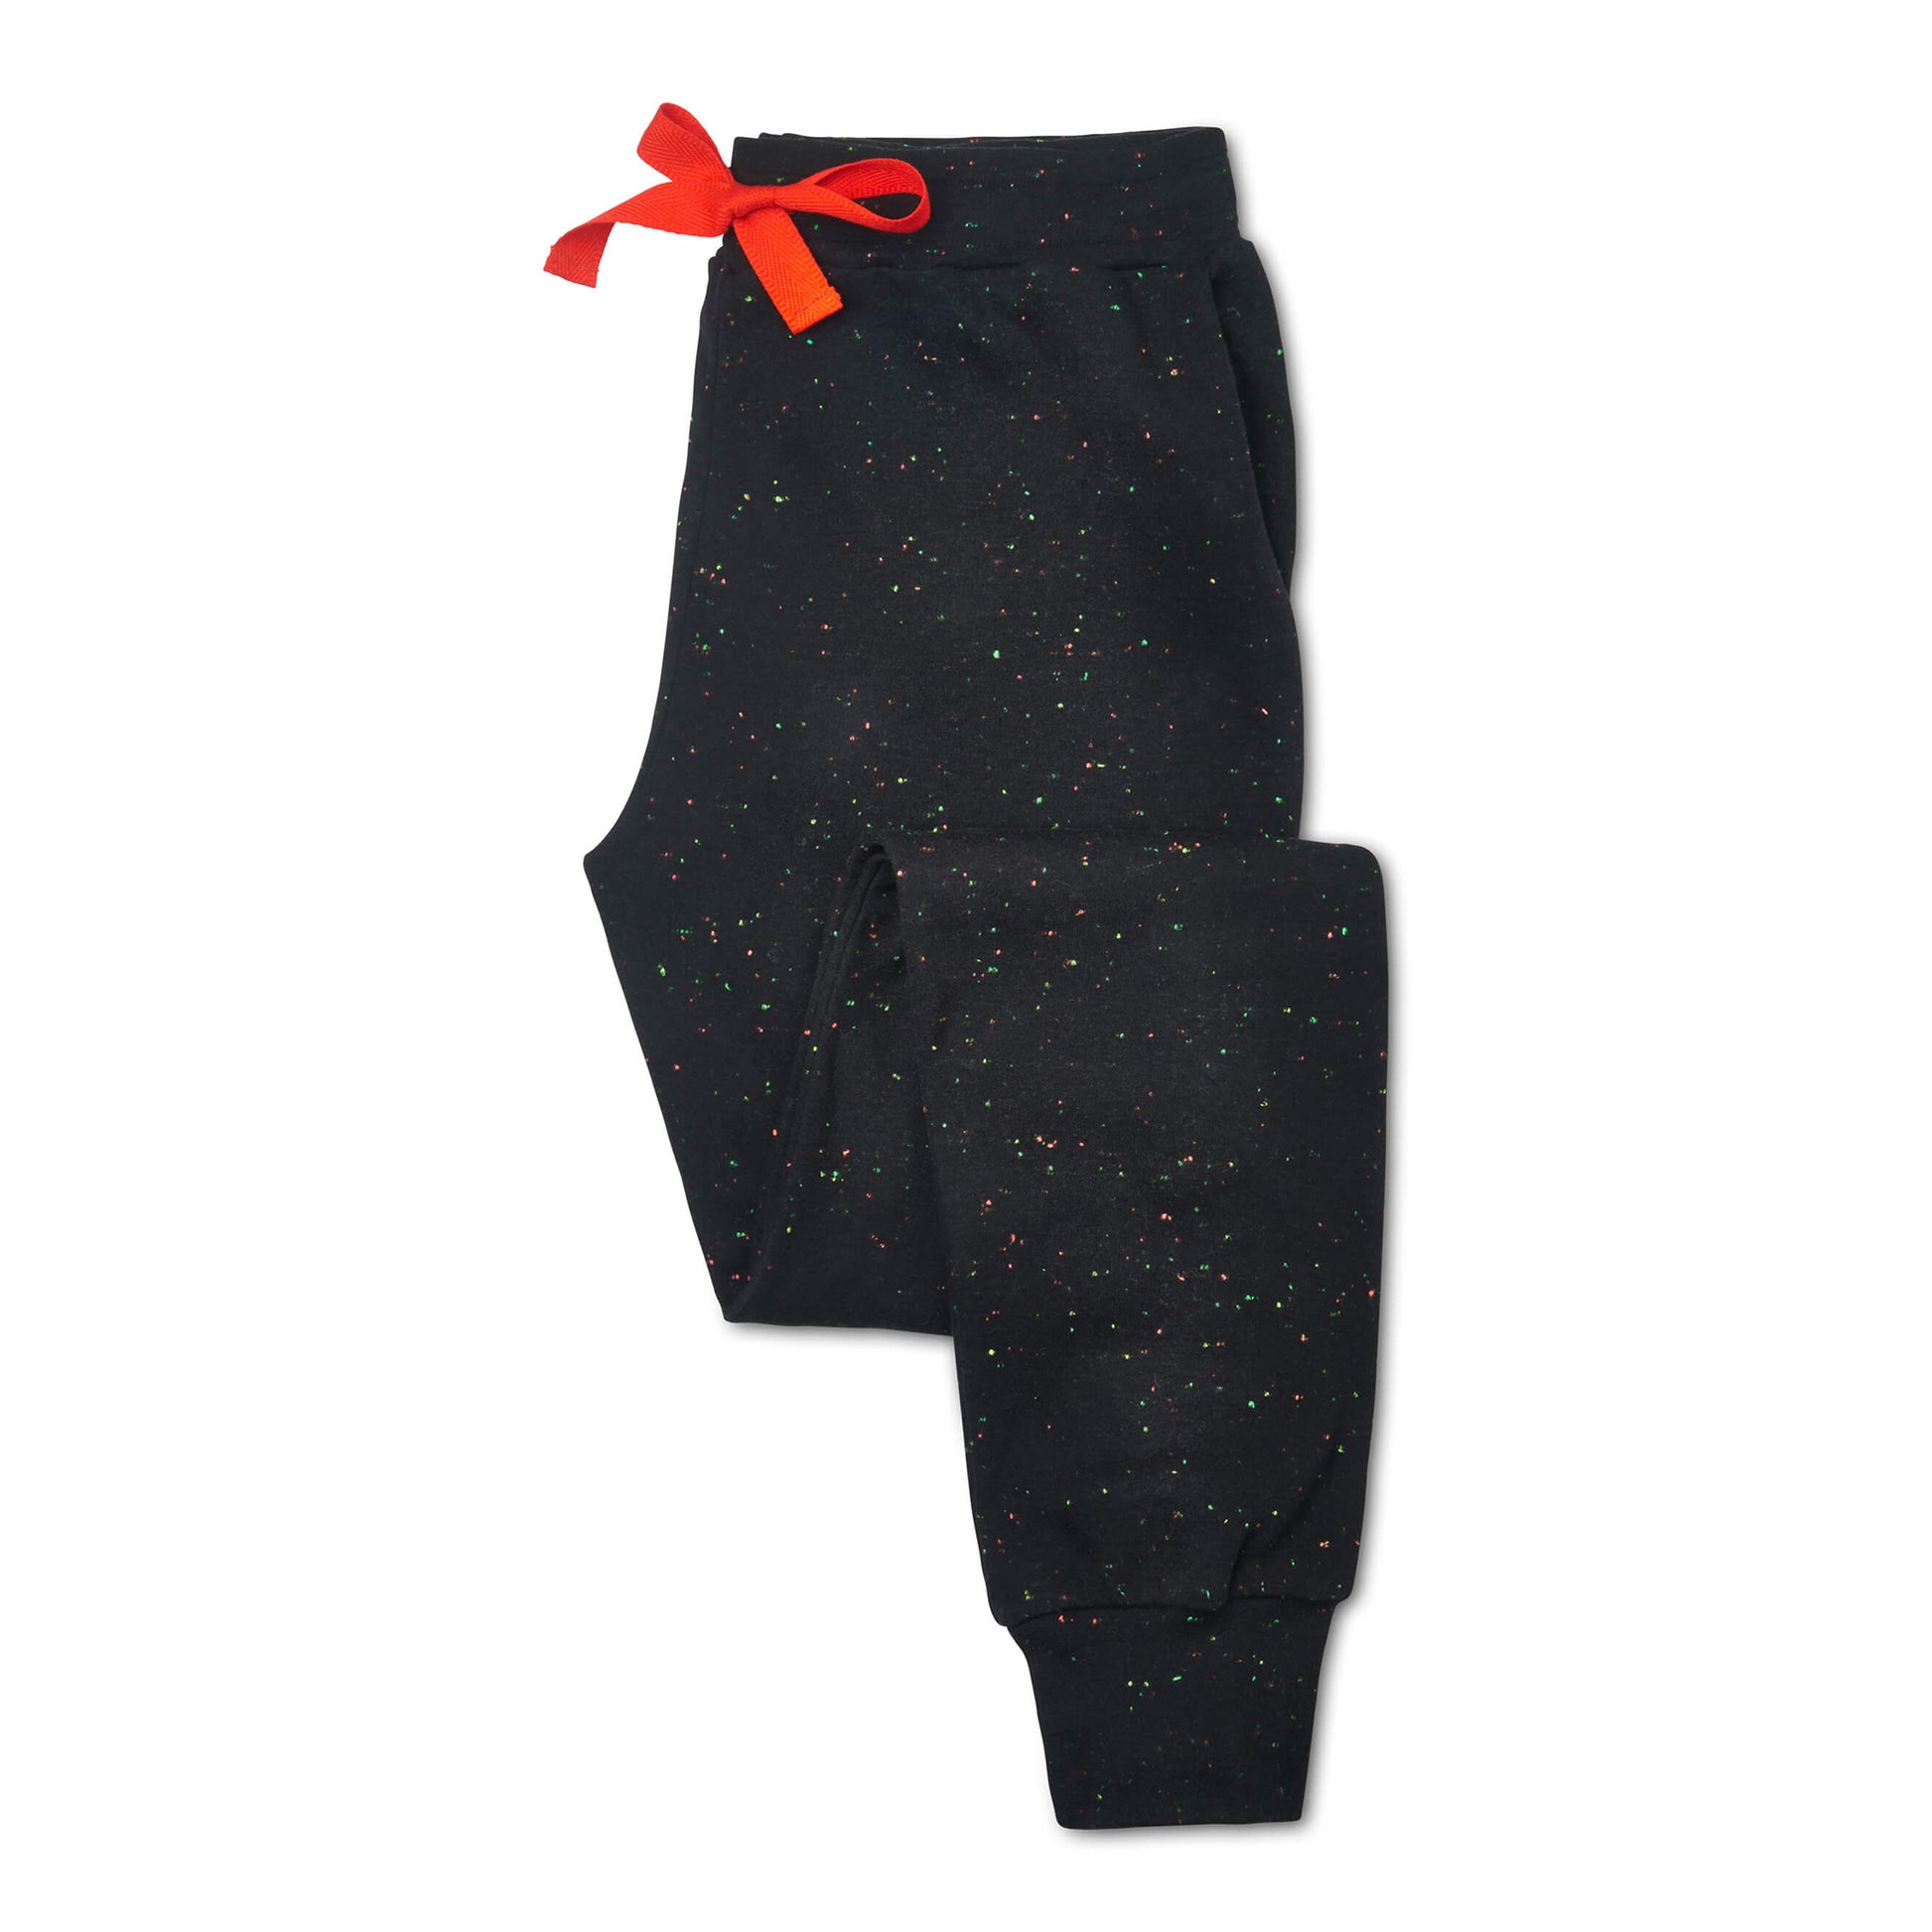 Tessie Confetti Black Pyjama Trousers | Women's Pyjama Trousers | Ladies PJ Bottoms | Nep Fabric | Black Pyjama Trousers with Pockets | Cuffed Pyjama Bottoms